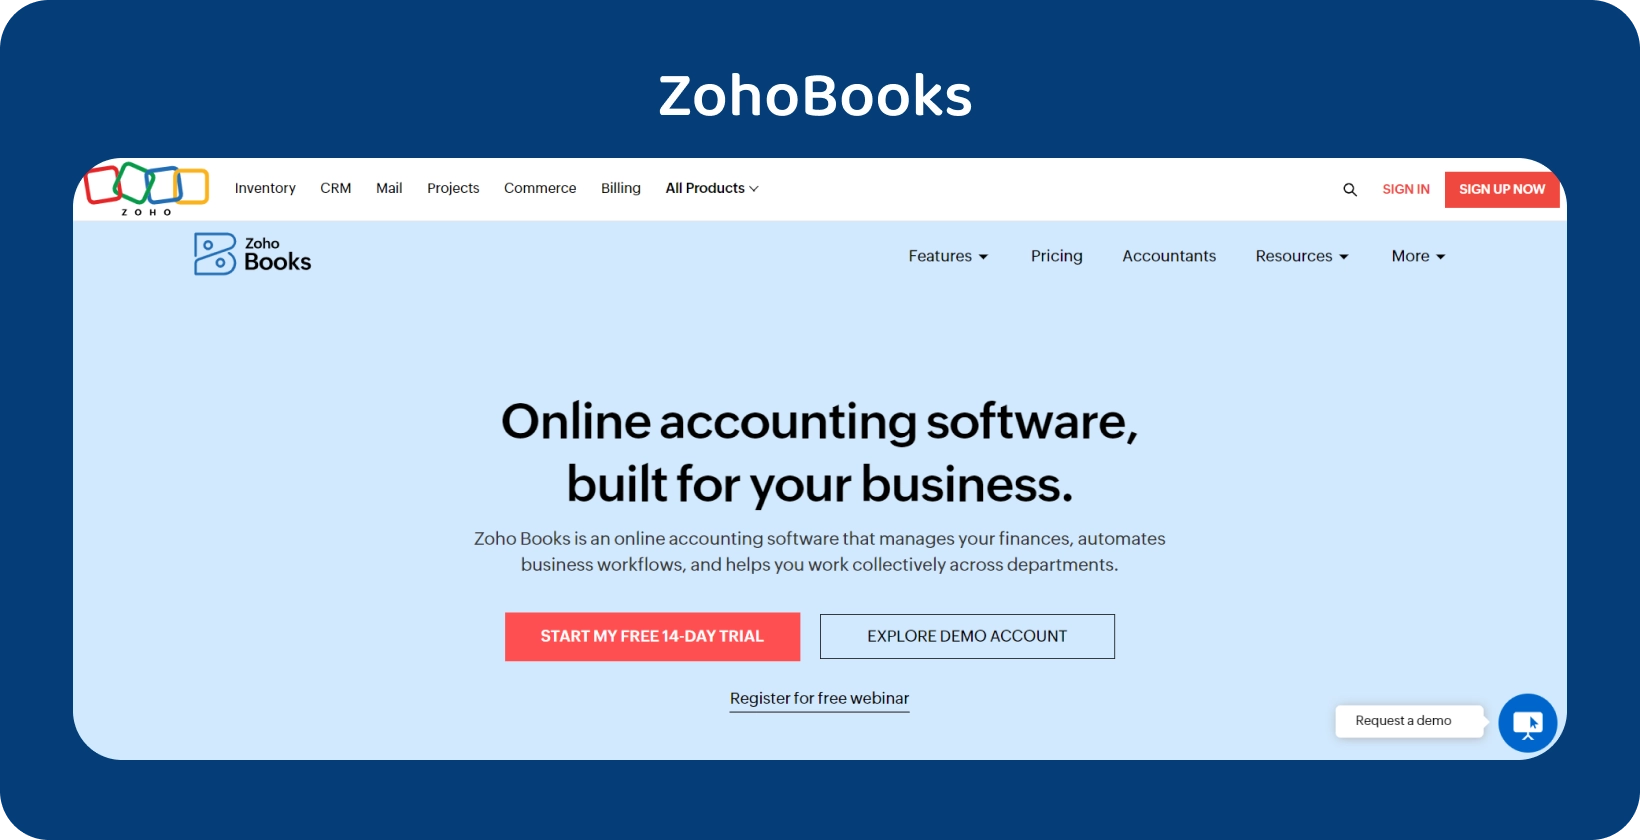 El banner de la página de inicio de Zoho Books destaca su software de contabilidad en línea adaptado a la empresa para agilizar las operaciones